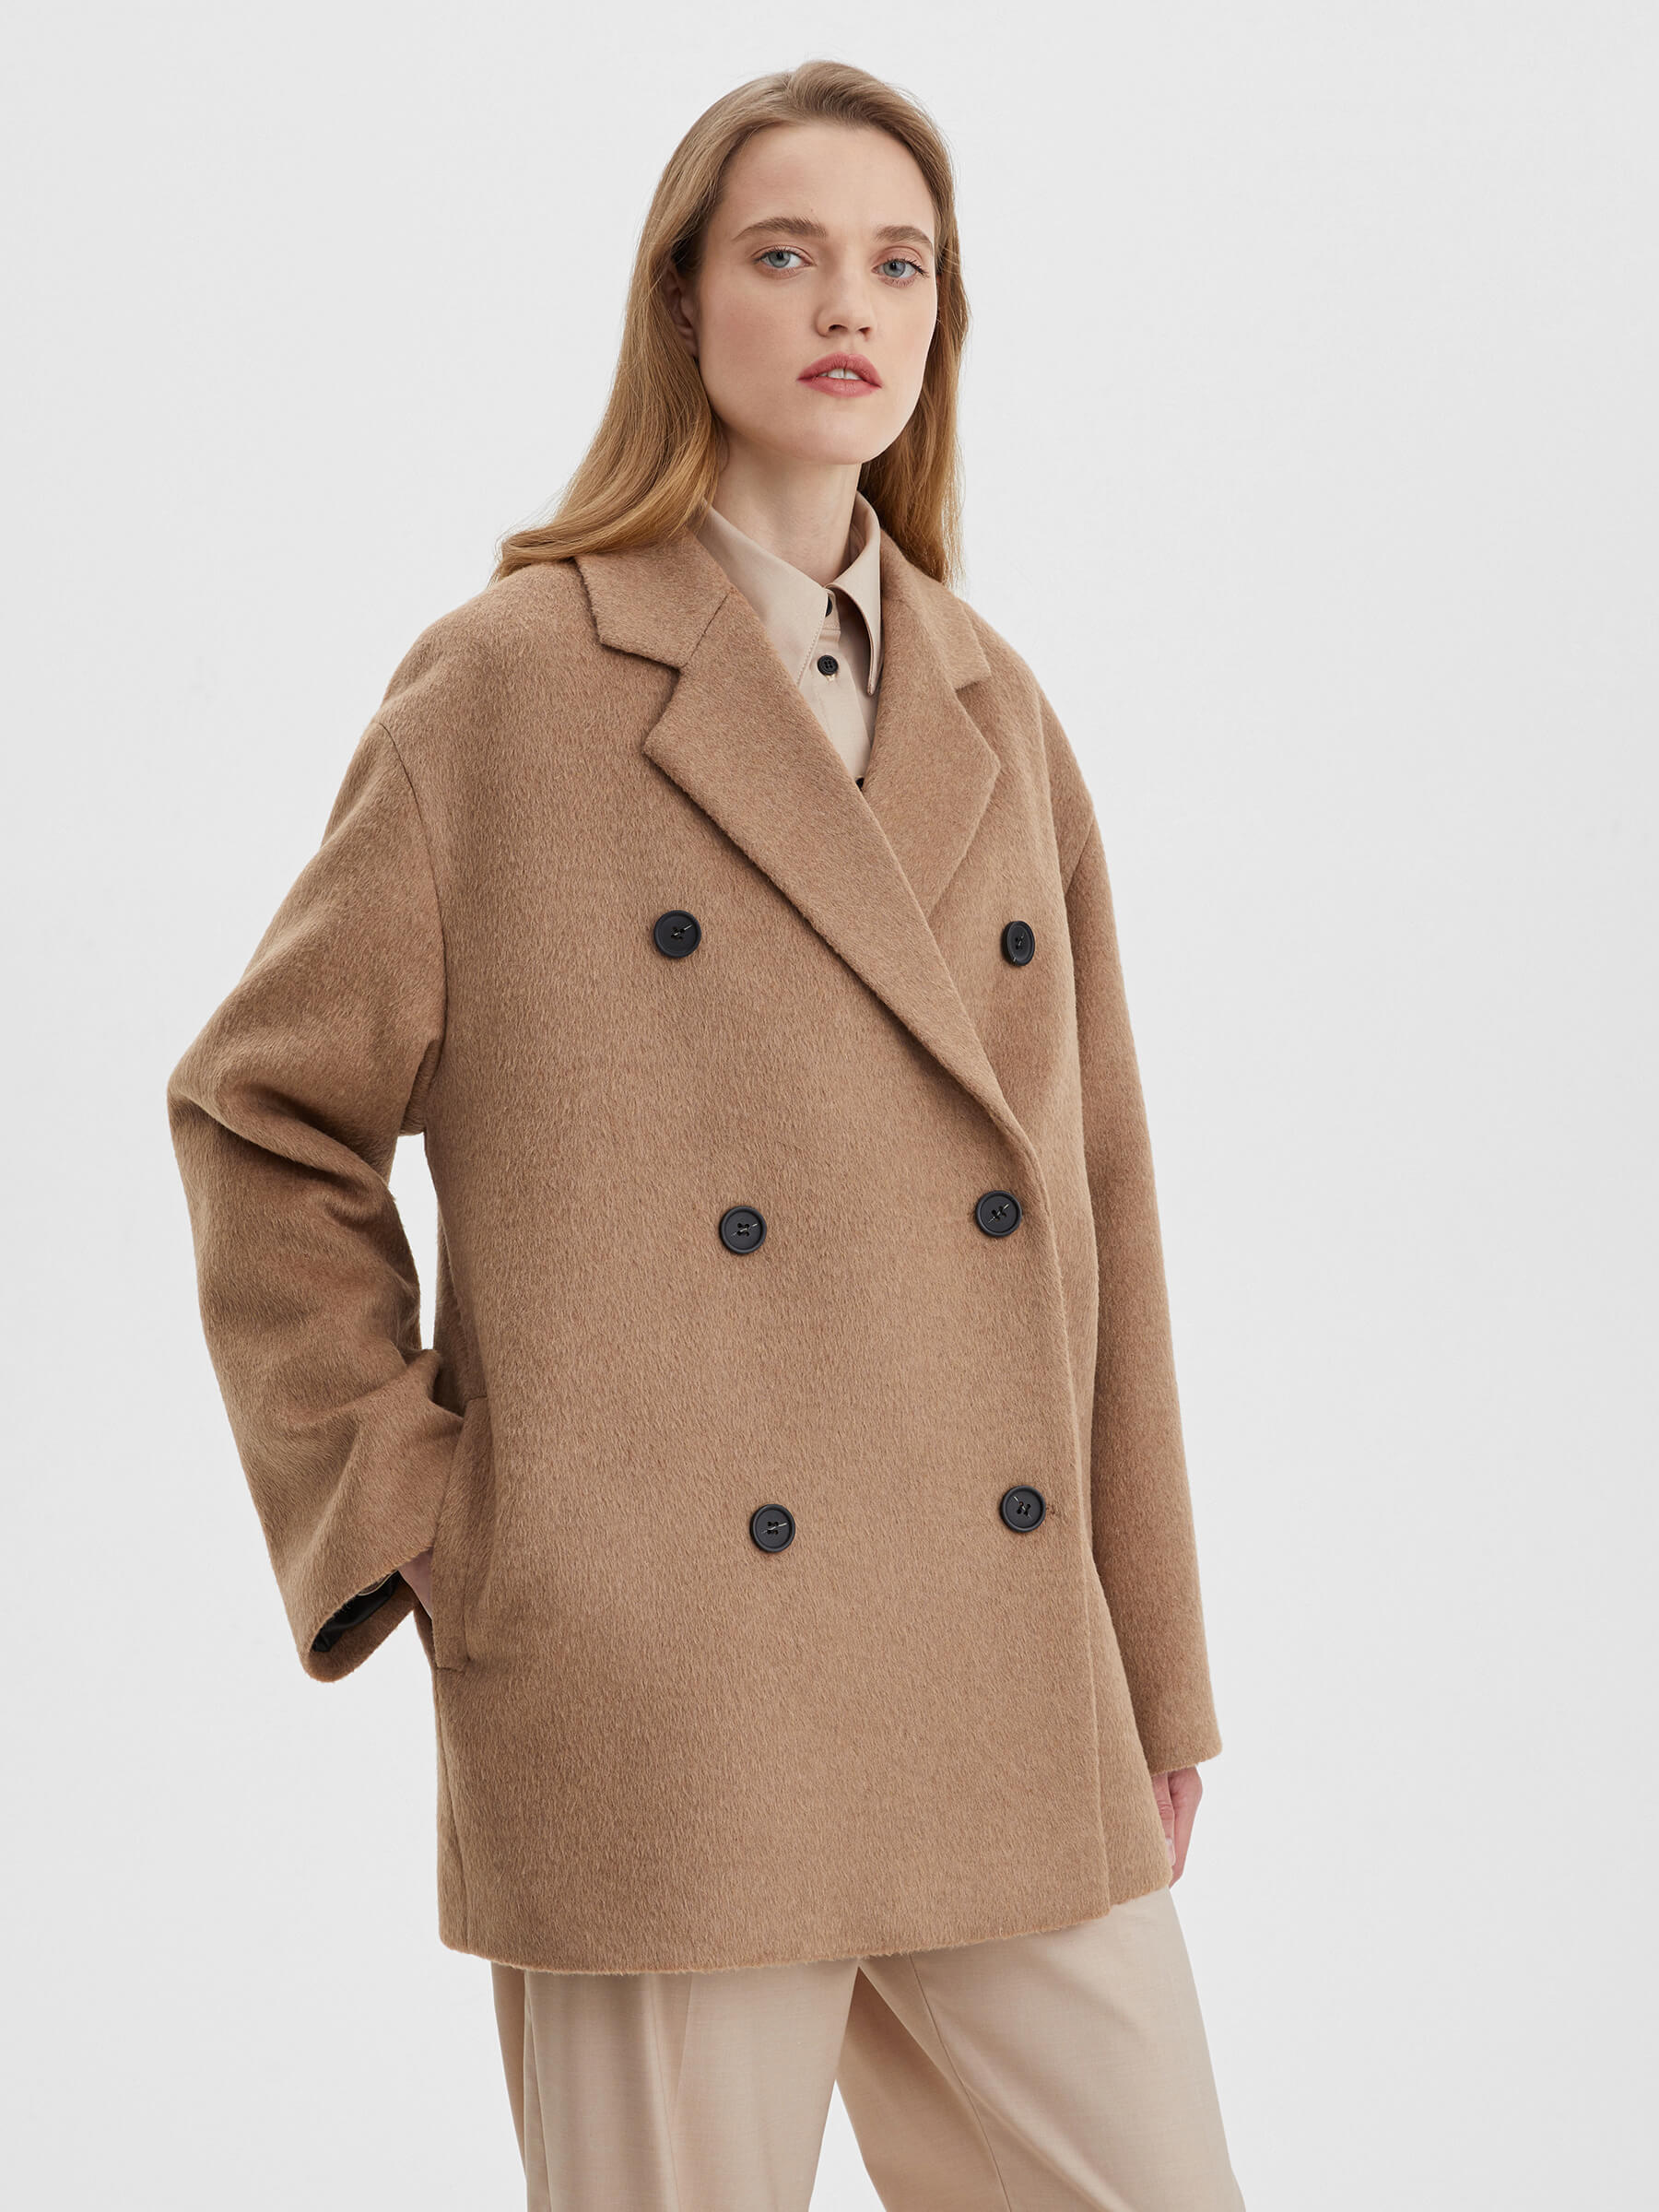 Пальто женское двубортное укороченное, цвет – коричневый крутое пальто новая модная однотонная куртка облегающие короткие куртки женское повседневное укороченное пальто мотоциклетная куртка н